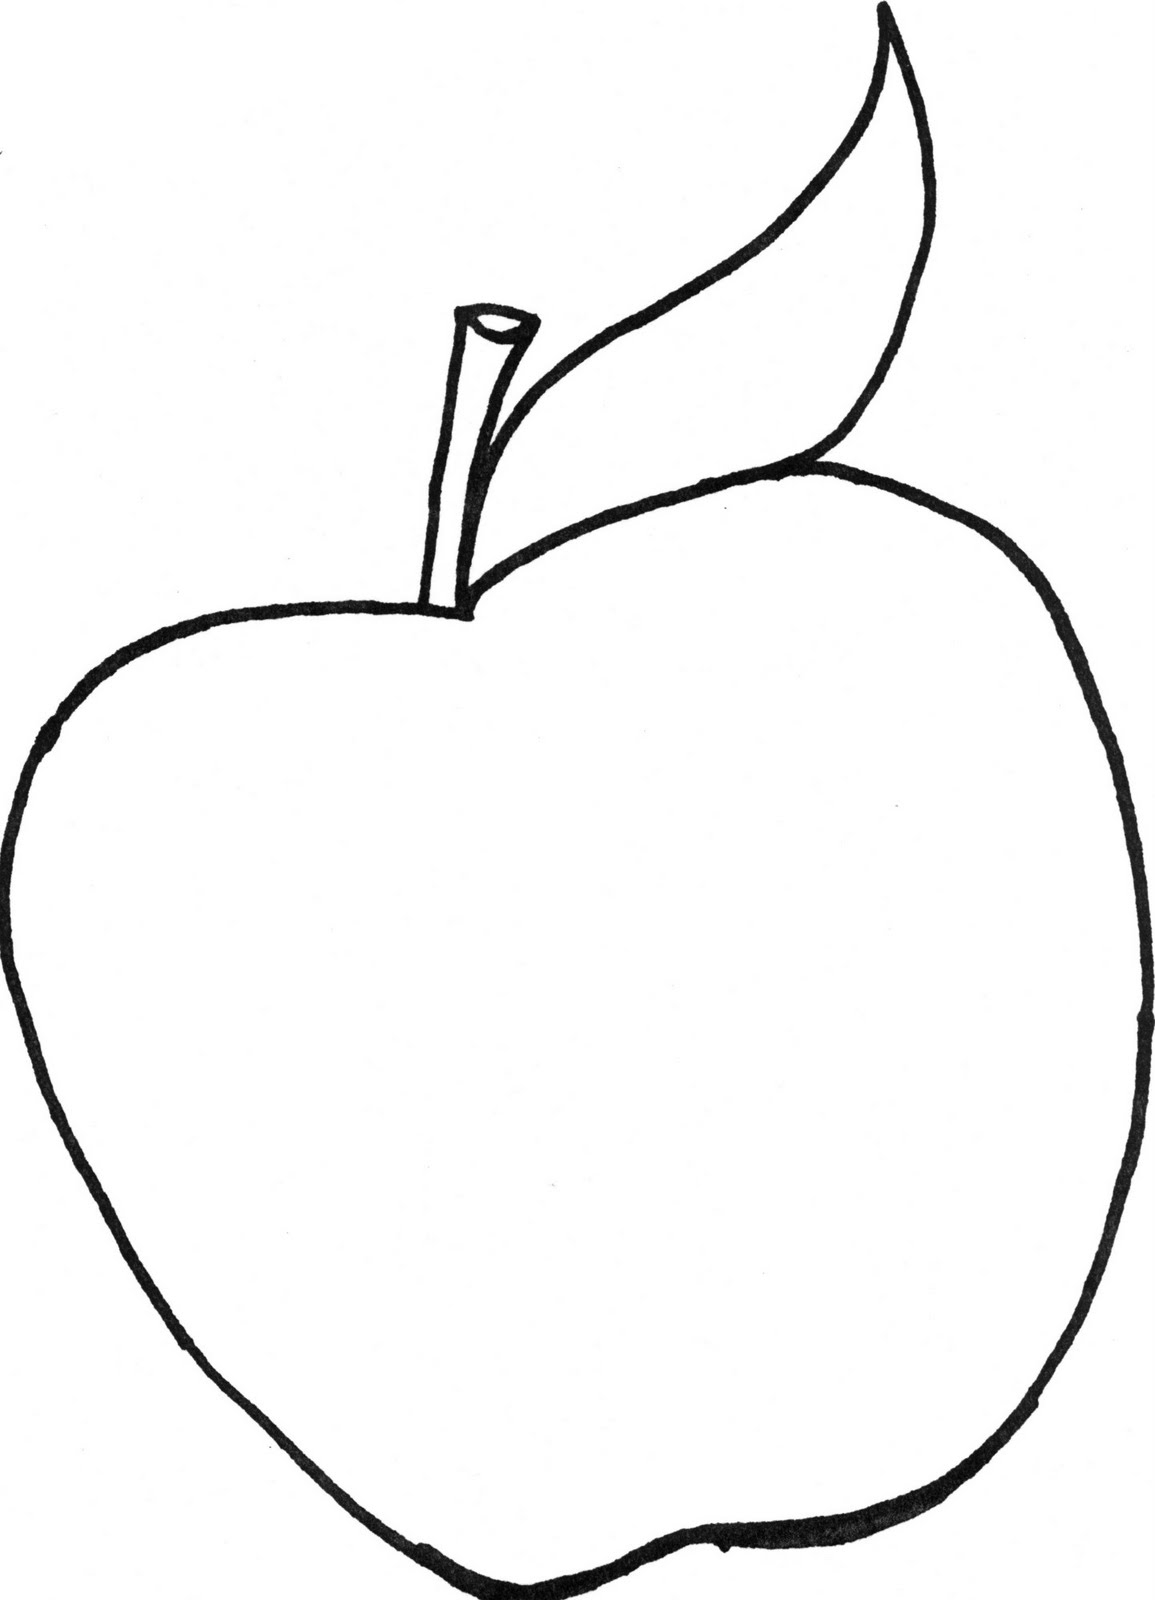 Срисовка 3d яблока